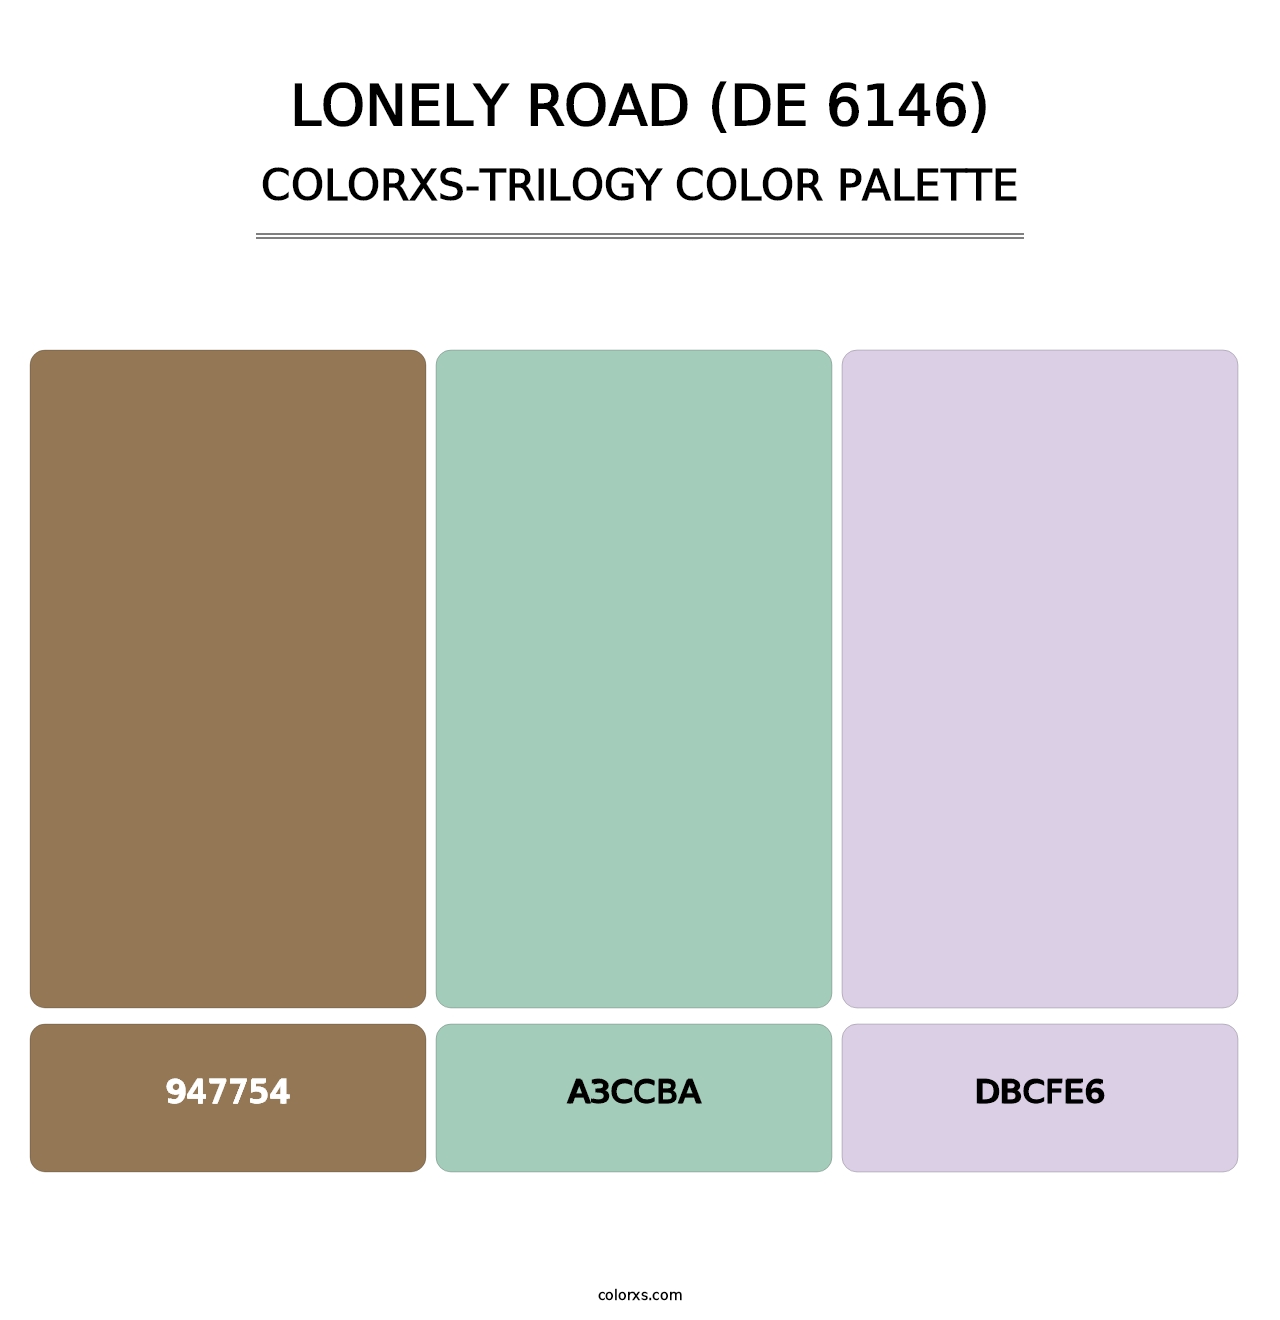 Lonely Road (DE 6146) - Colorxs Trilogy Palette